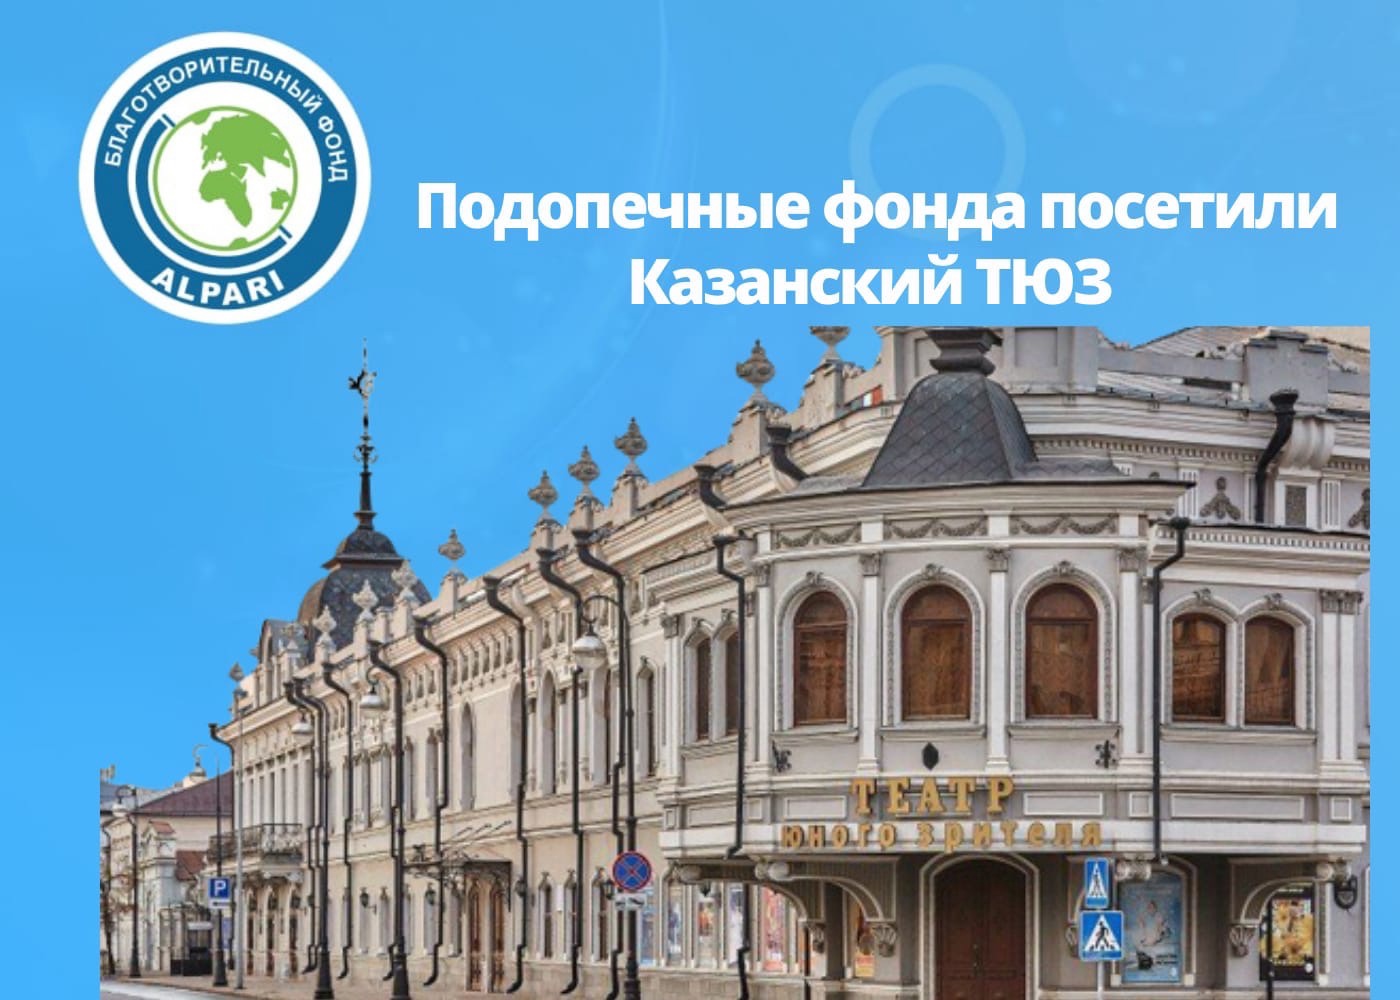 14 июня подопечные фонда АЛЬПАРИ вновь посетили  Казанский Тюз.